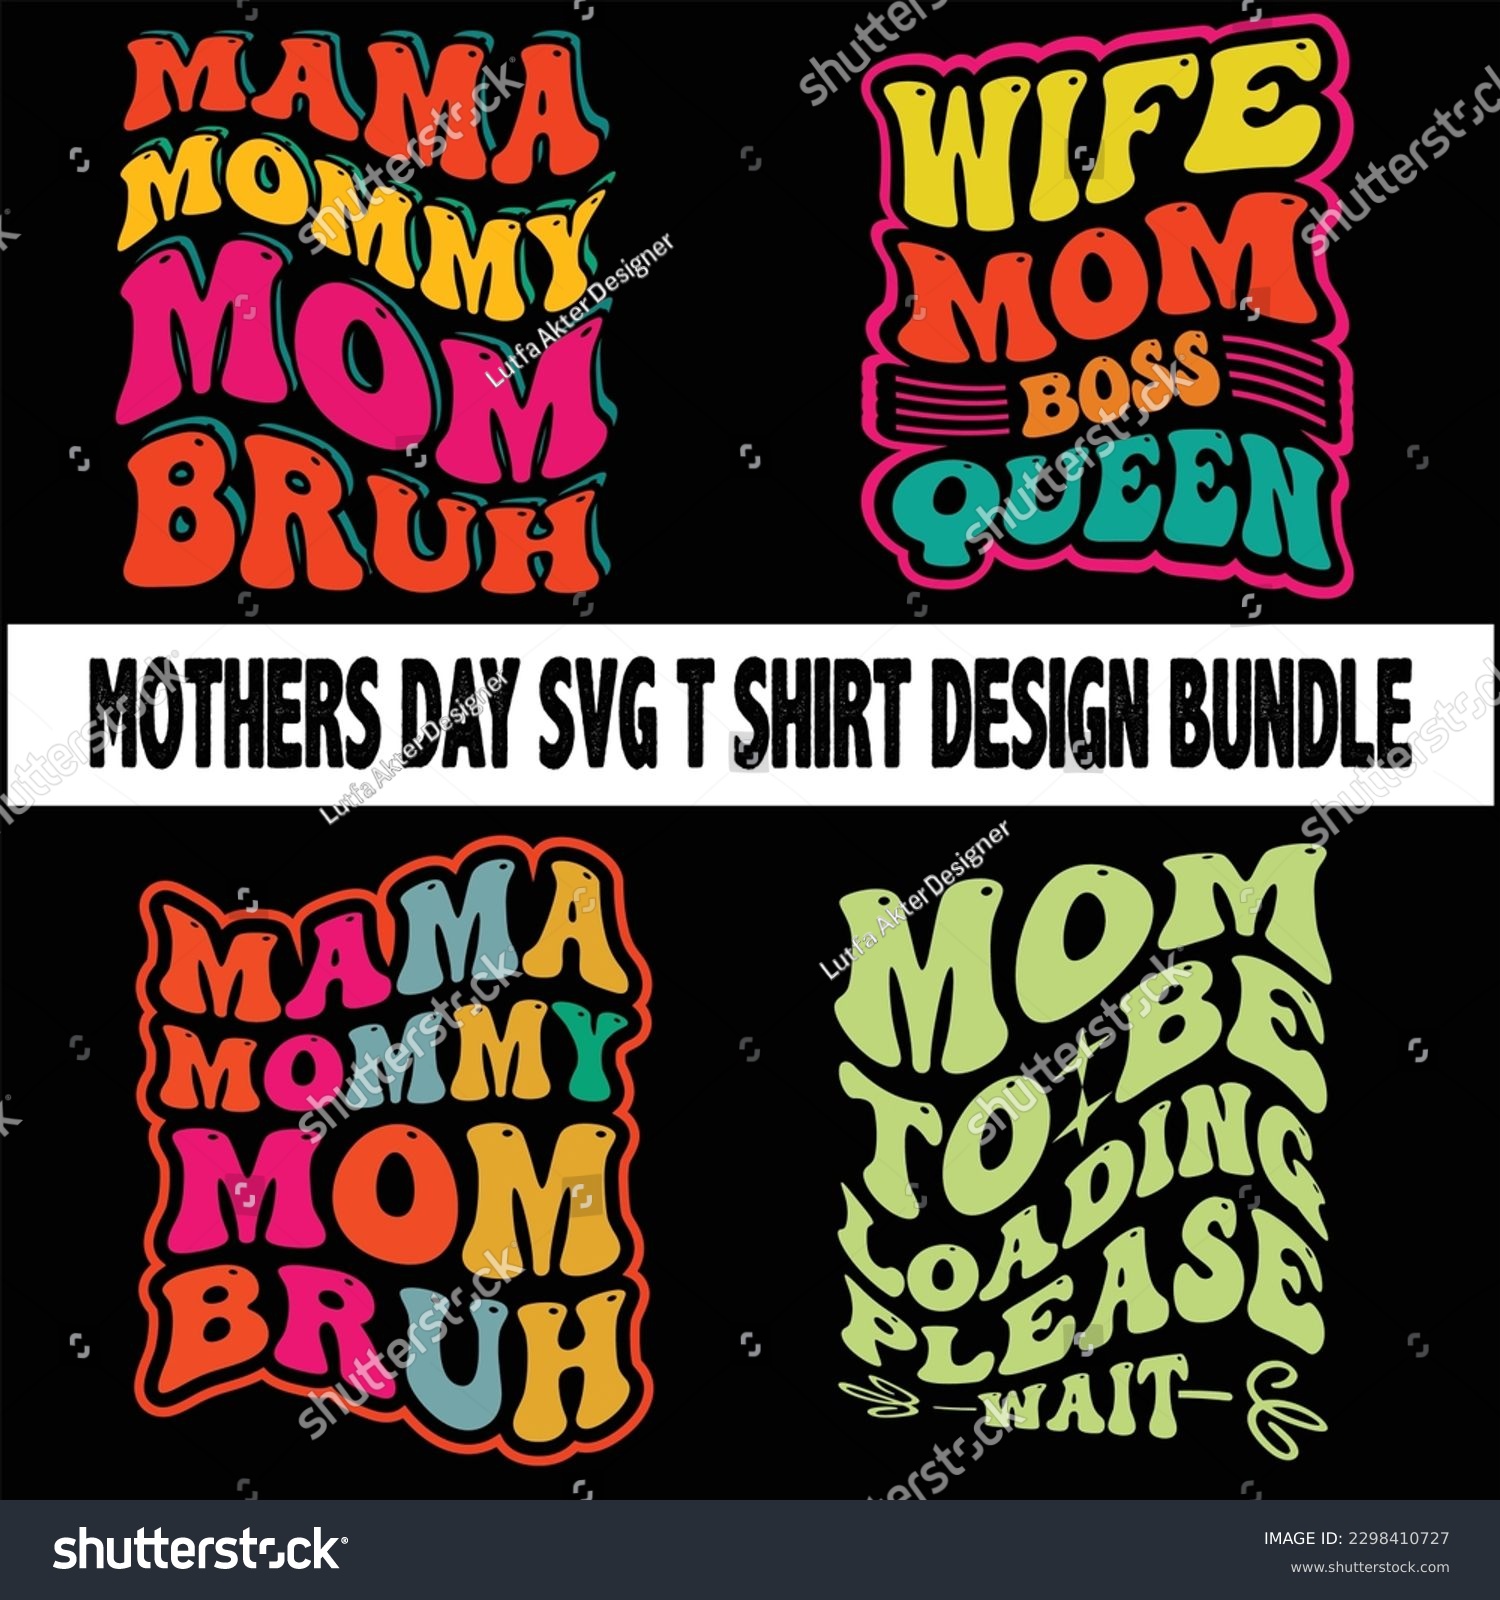 SVG of Retro Mother's Day SVG Bundle, Mom Shirt svg, Mother's Day Gift,
 Retro Mama Svg,Mama Groovy Svg Bundle File, Retro Mama svg,
 Mama Boho Png file Download, 
 
 svg